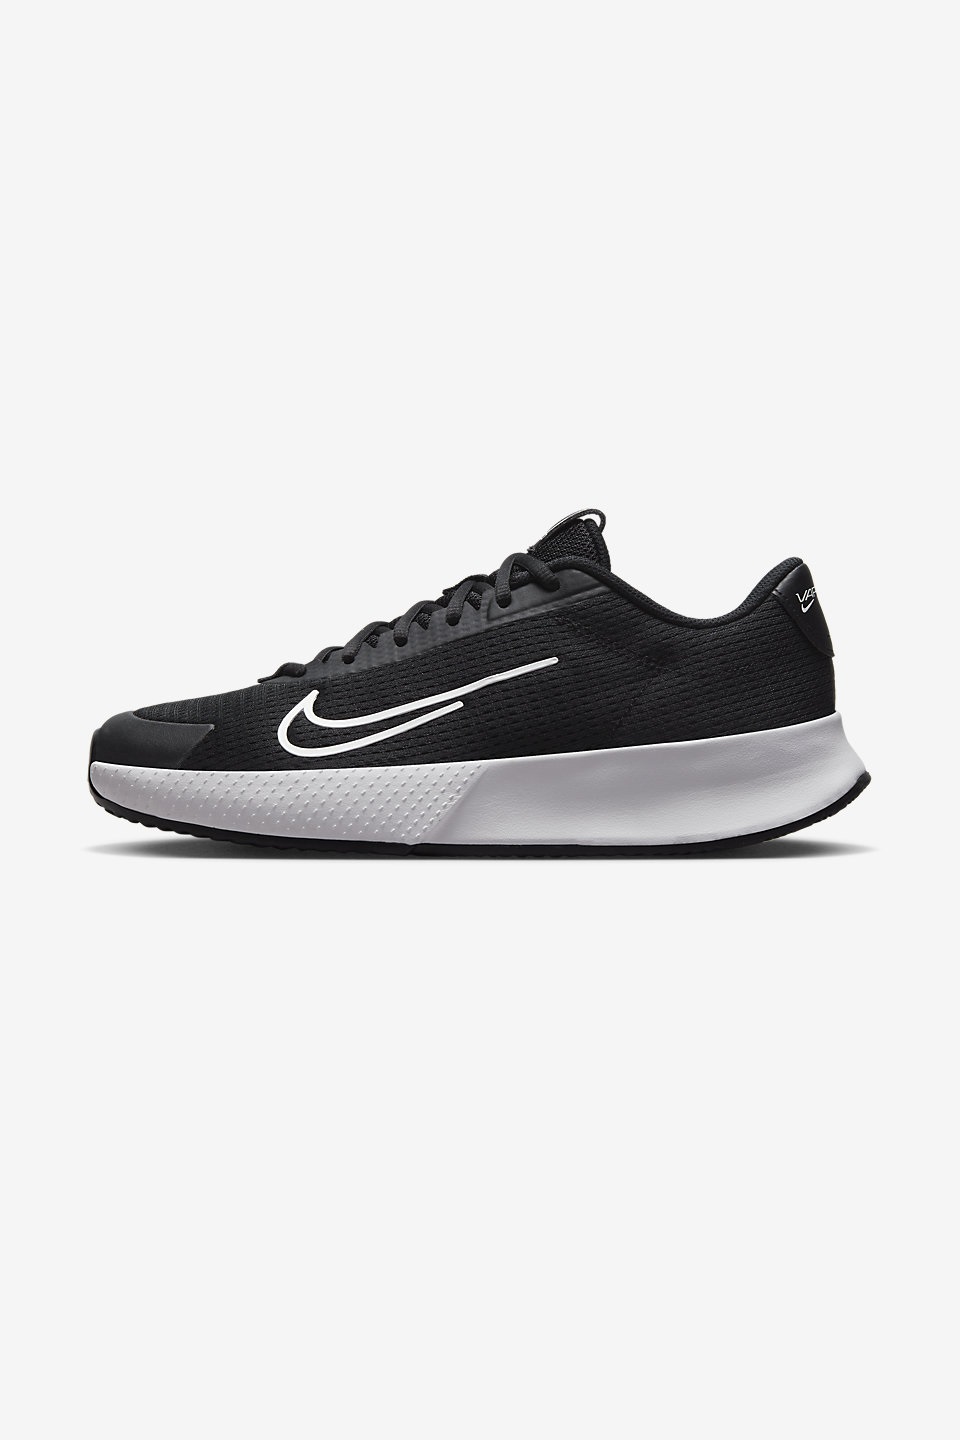 NIKE - NikeCourt Vapor Lite 2 Erkek Toprak Kort Tenis Ayakkabısı